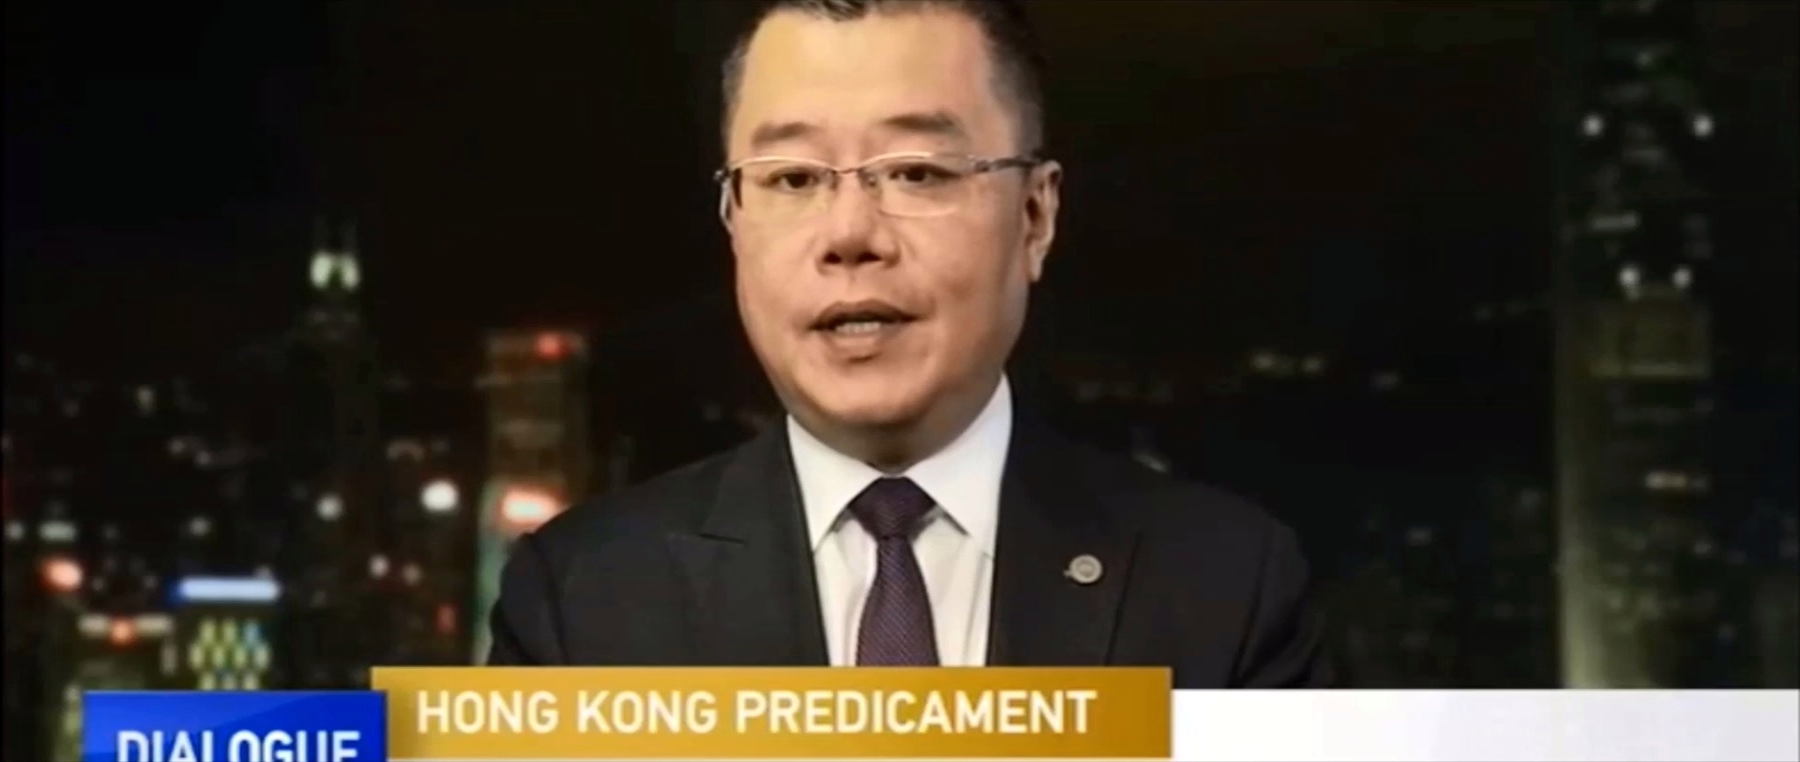 Dialogue with Yang Rui – Hong Kong Predicament